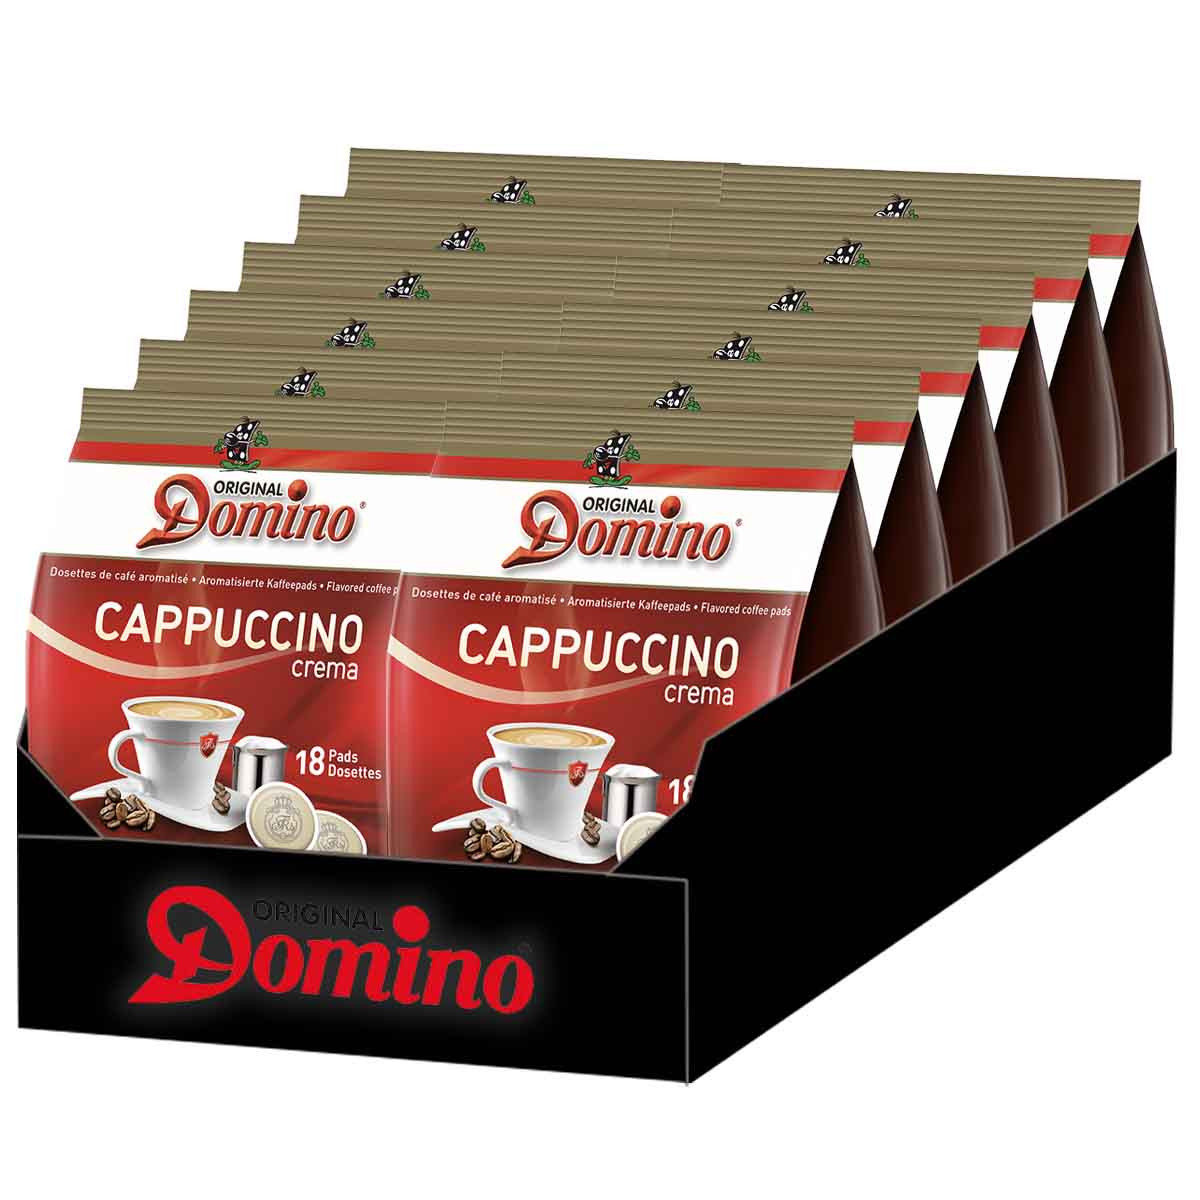 Dosette Senseo Cappuccino Caramel - 8 dosettes